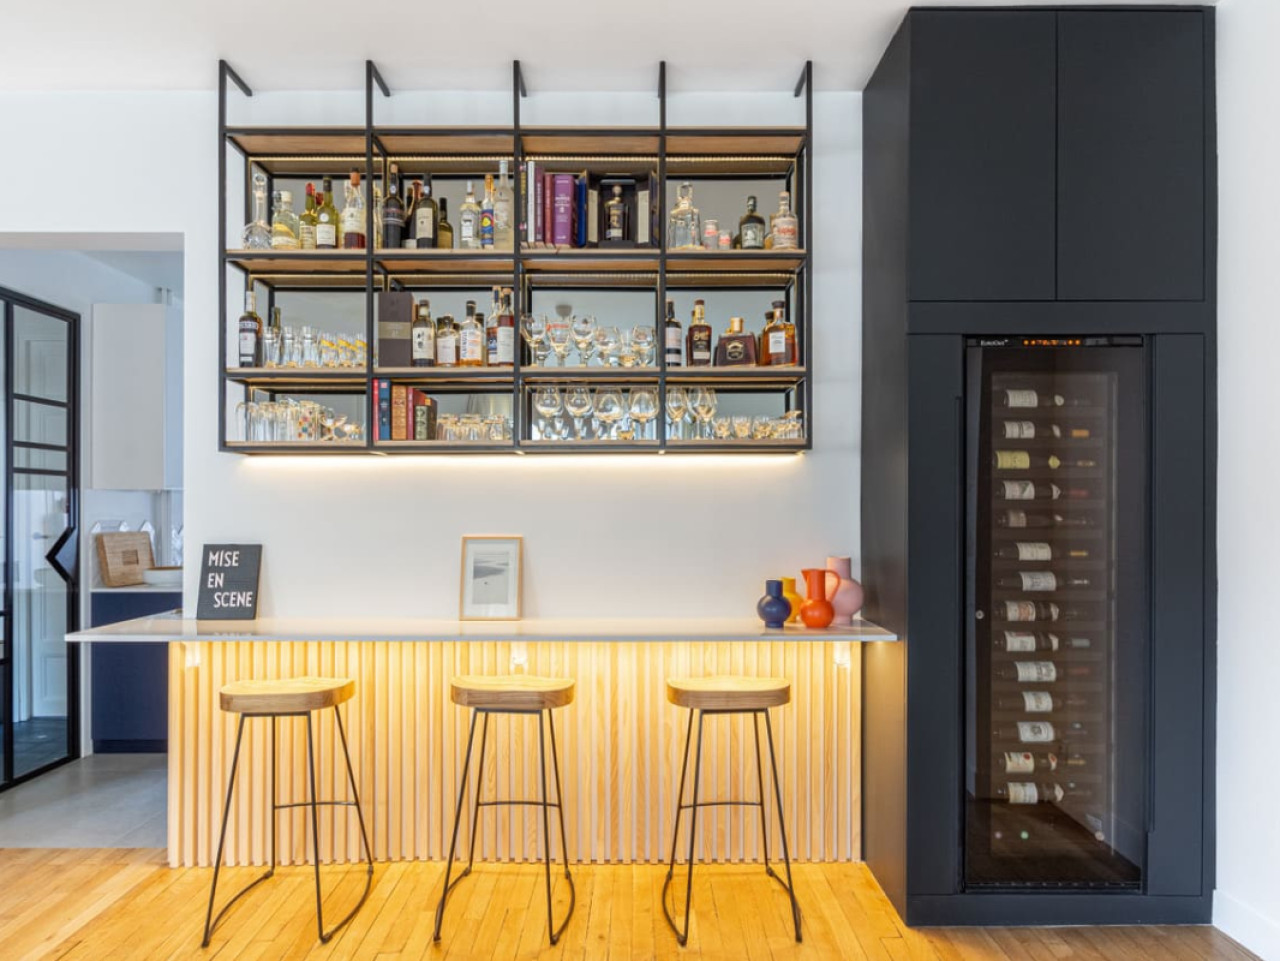 Bar de salon avec une cave à vin eurocave intégrée dans un meuble